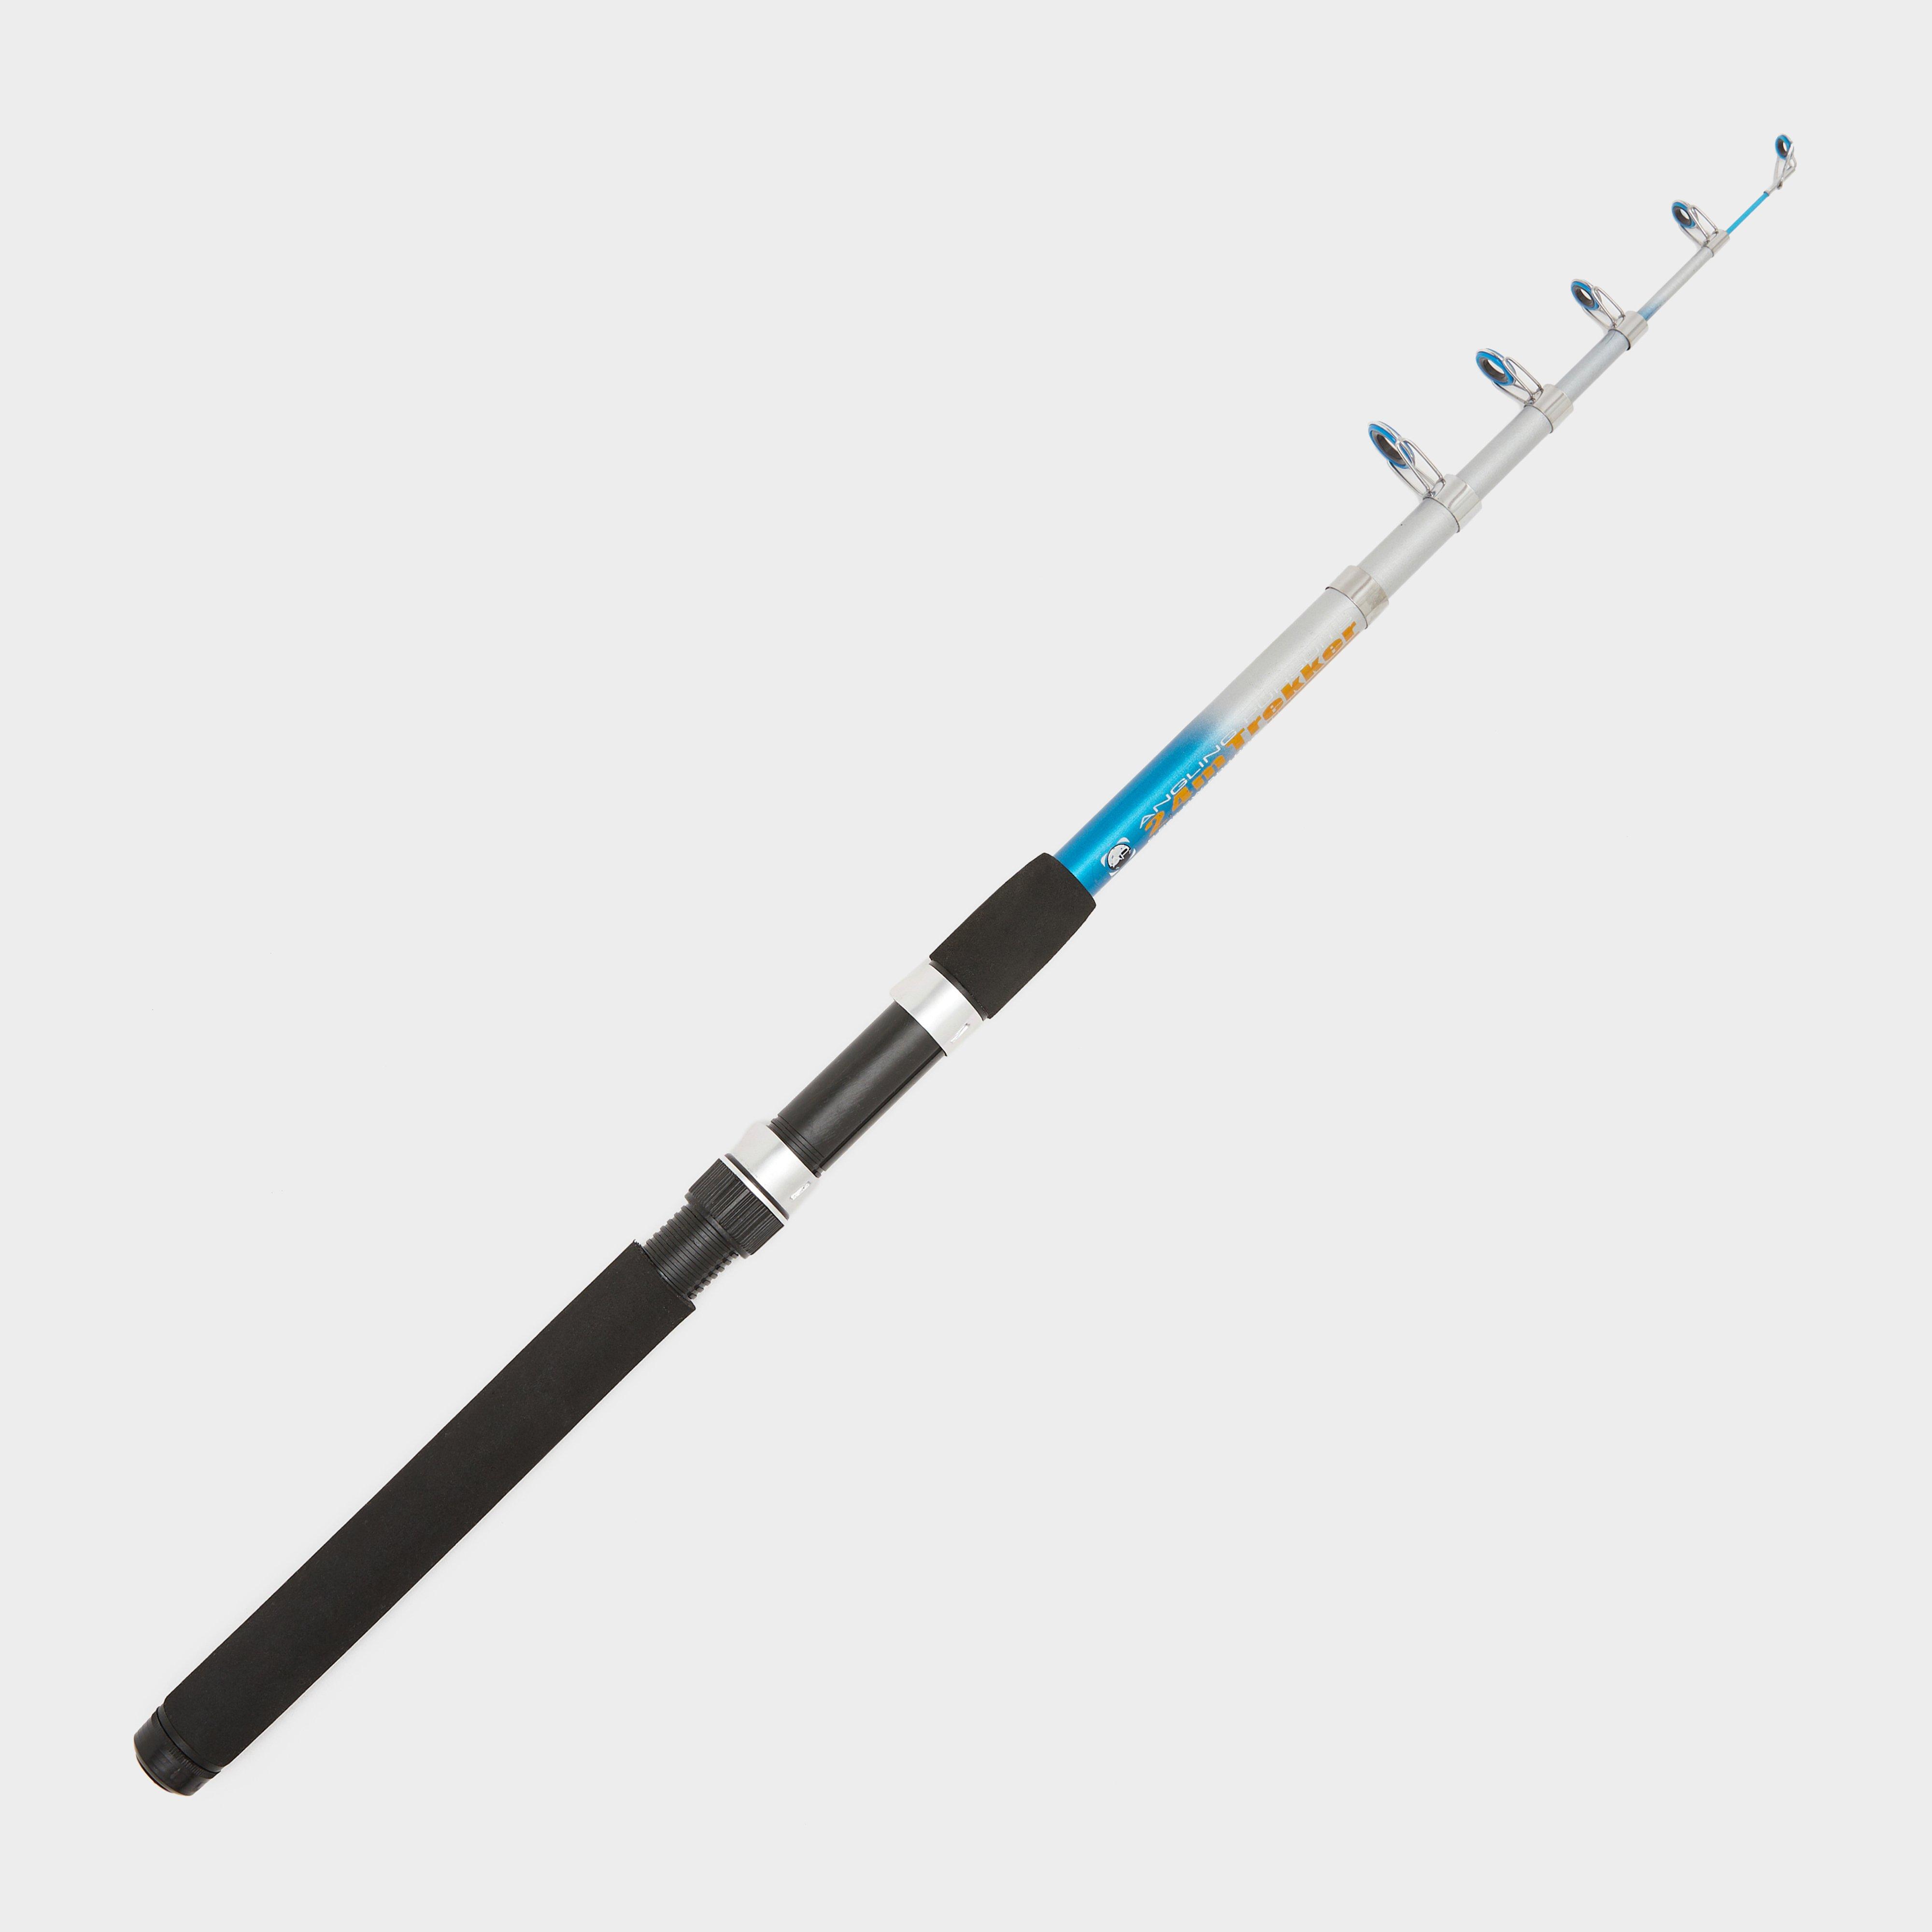 Ngt Trekker Telescopic Fishing Rod 8ft (2.4m) - Black/telescopic  Black/telescopic